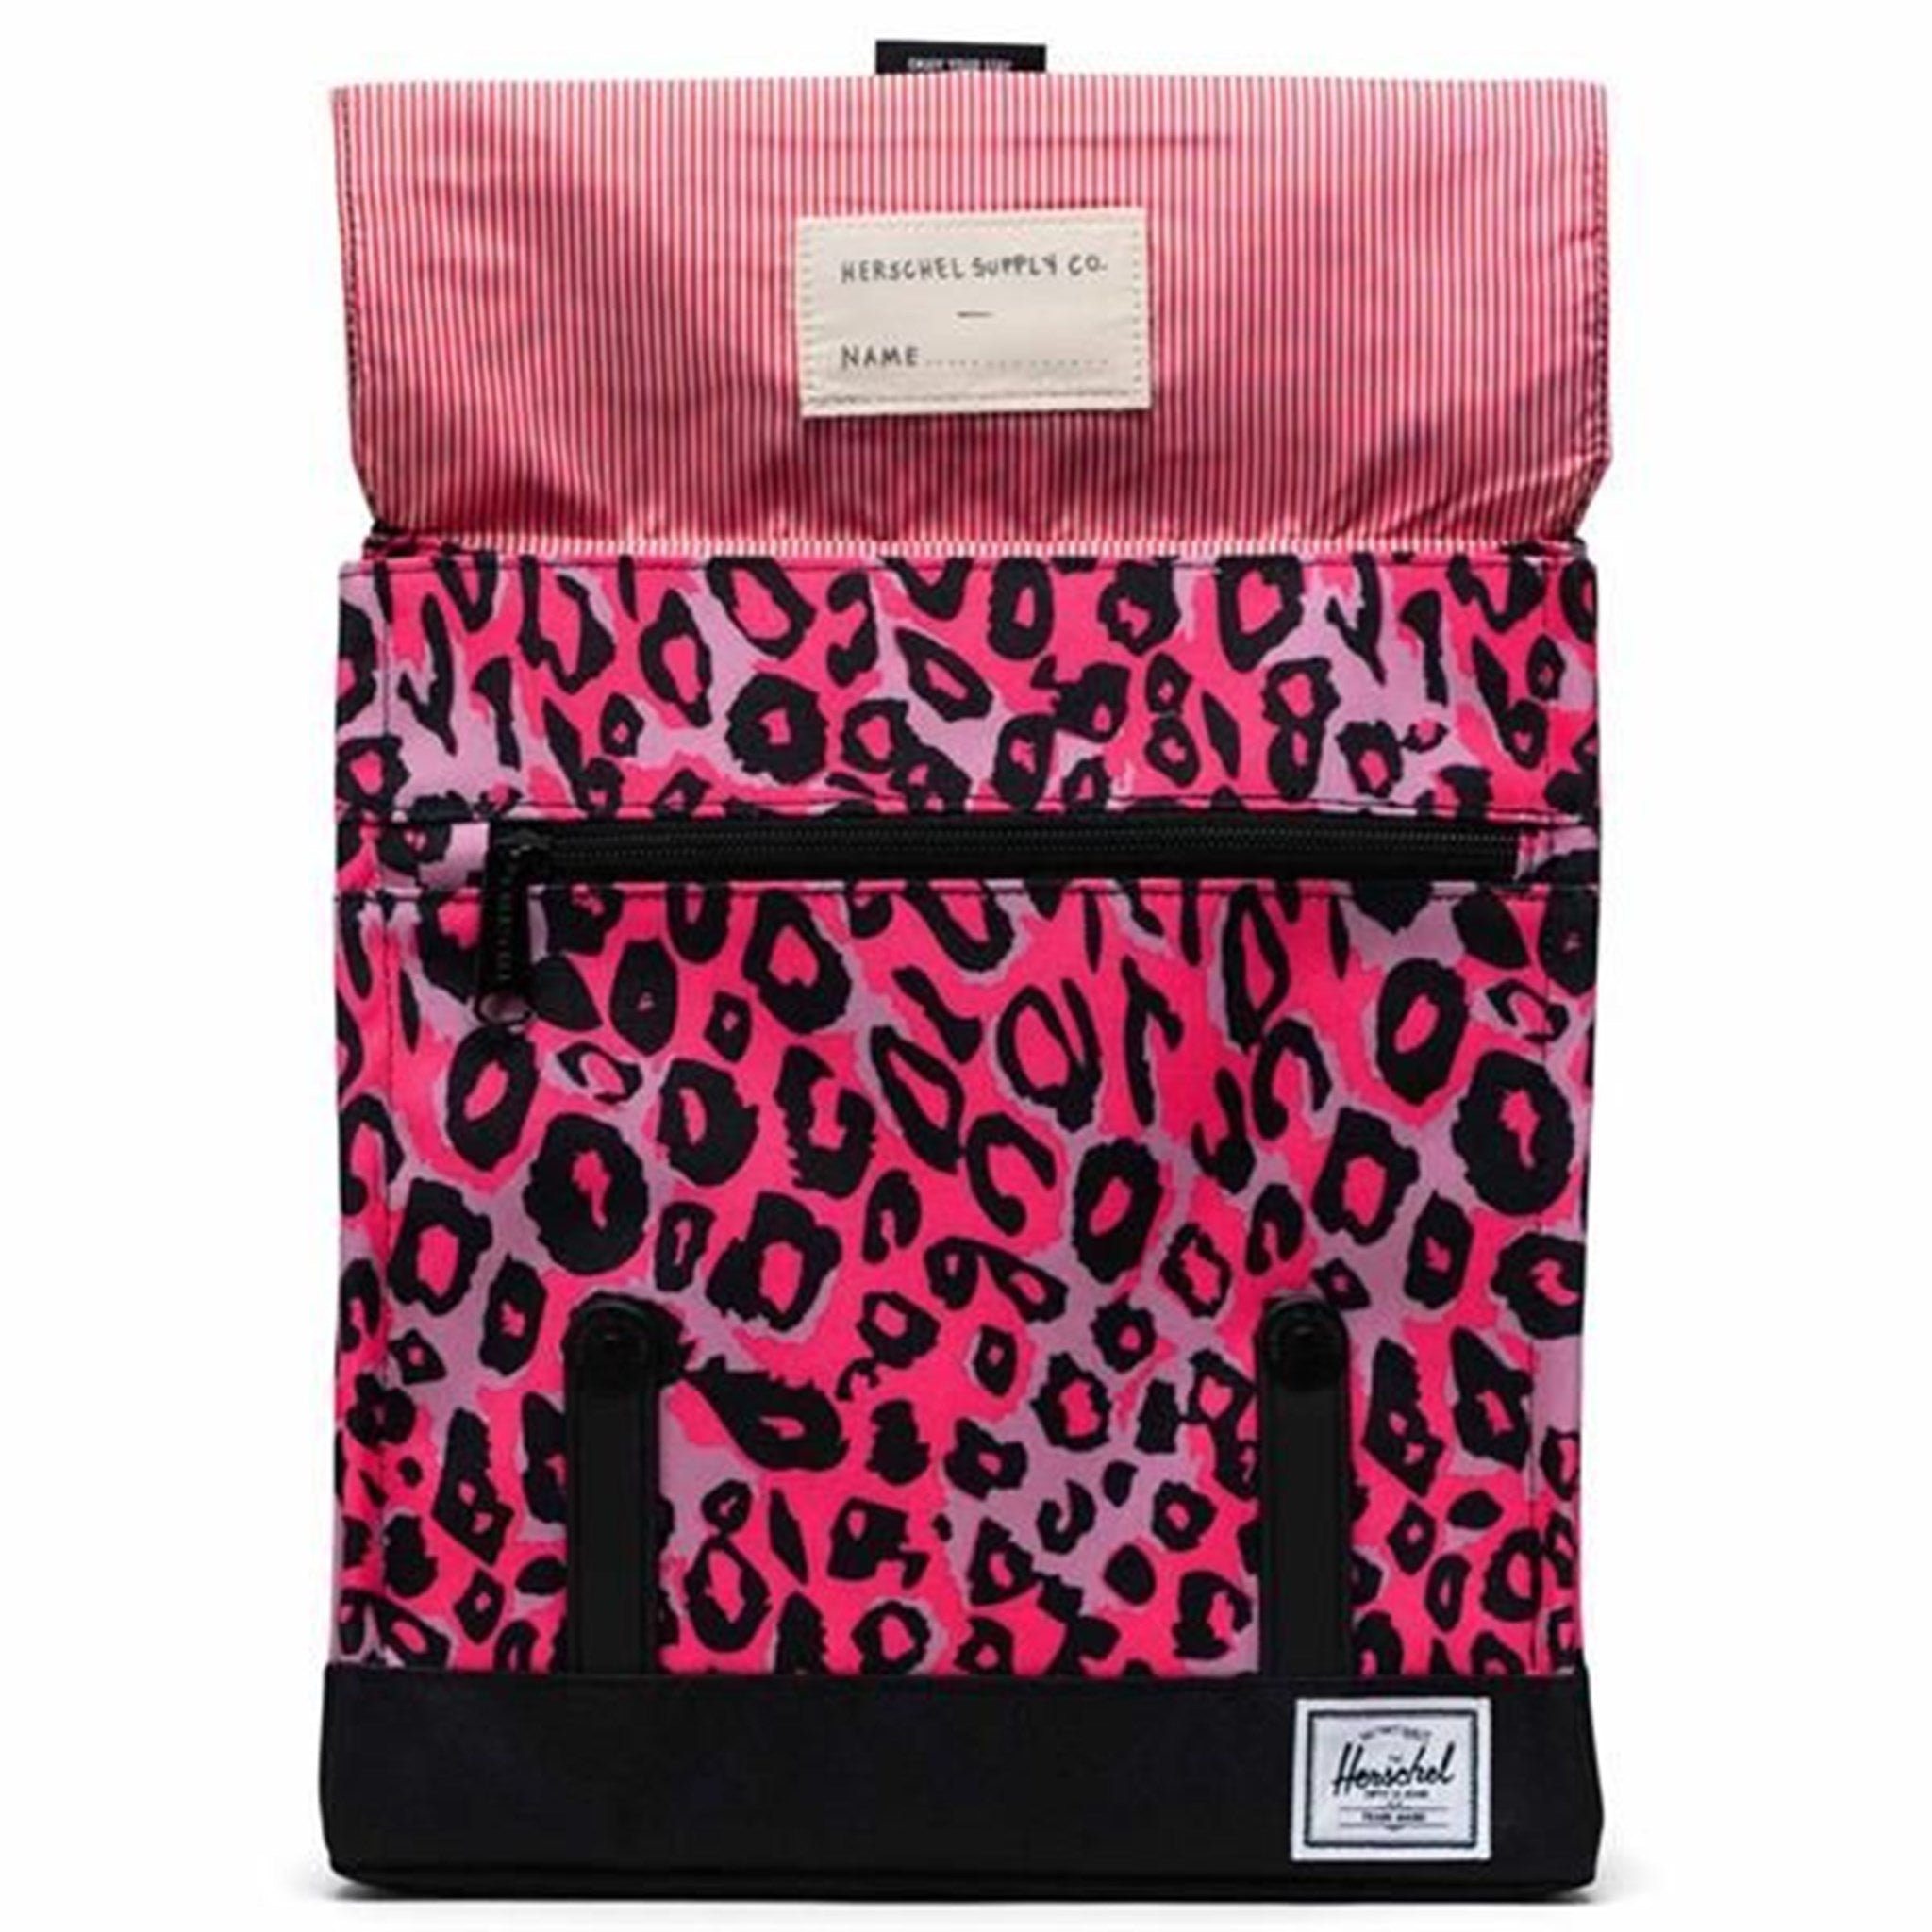 Herschel Survey Kids Backpack Cheetah Camo Neon Pink/Black 4